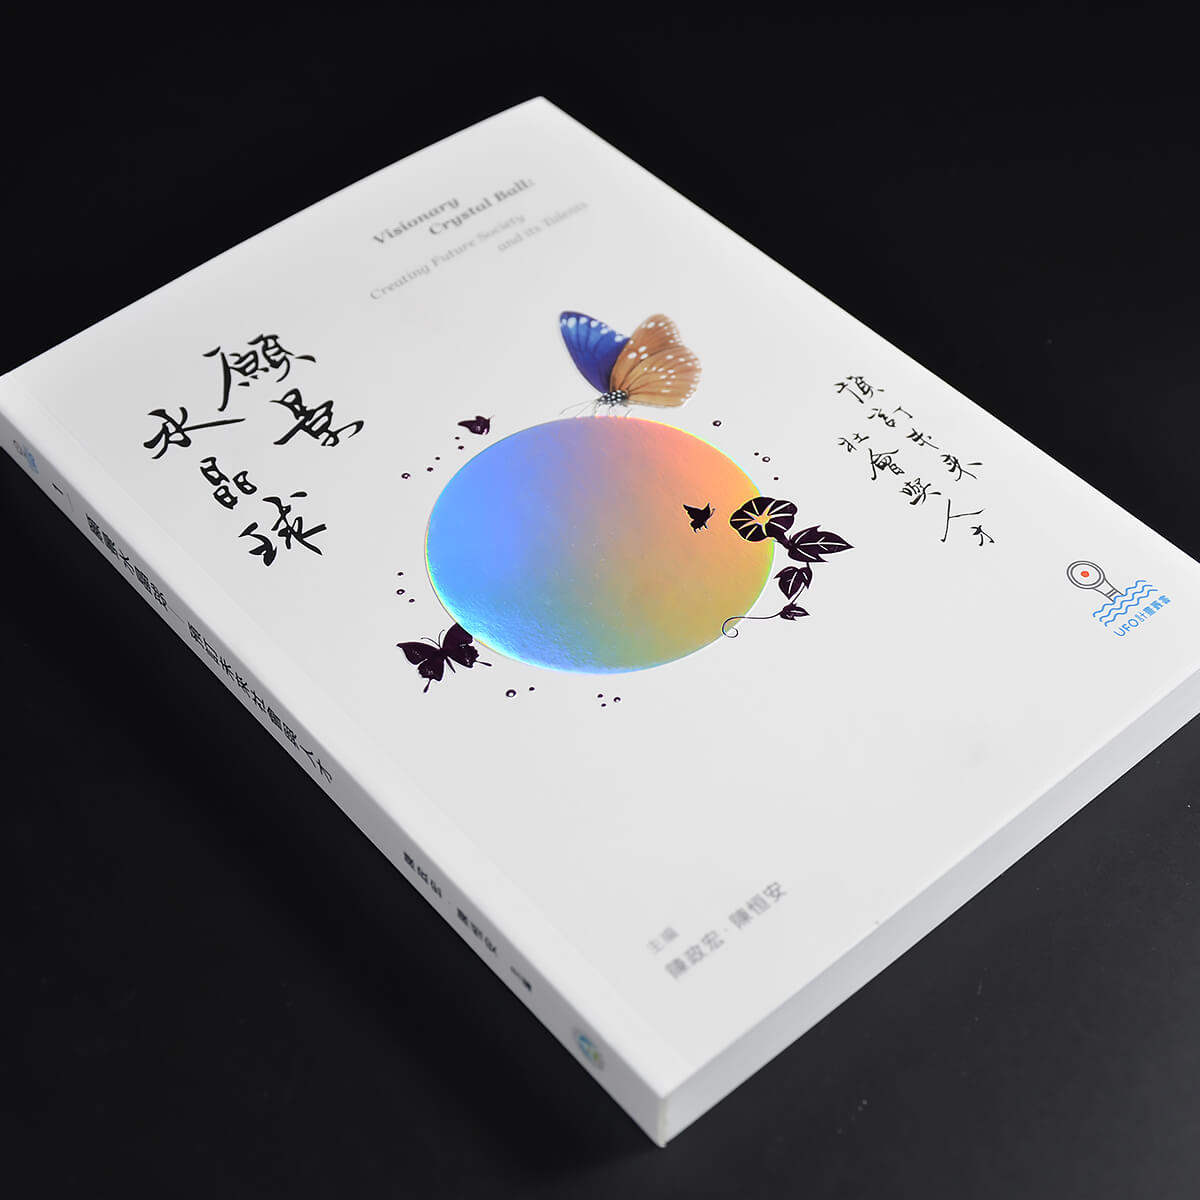 《願景水晶球》書籍裝幀設計